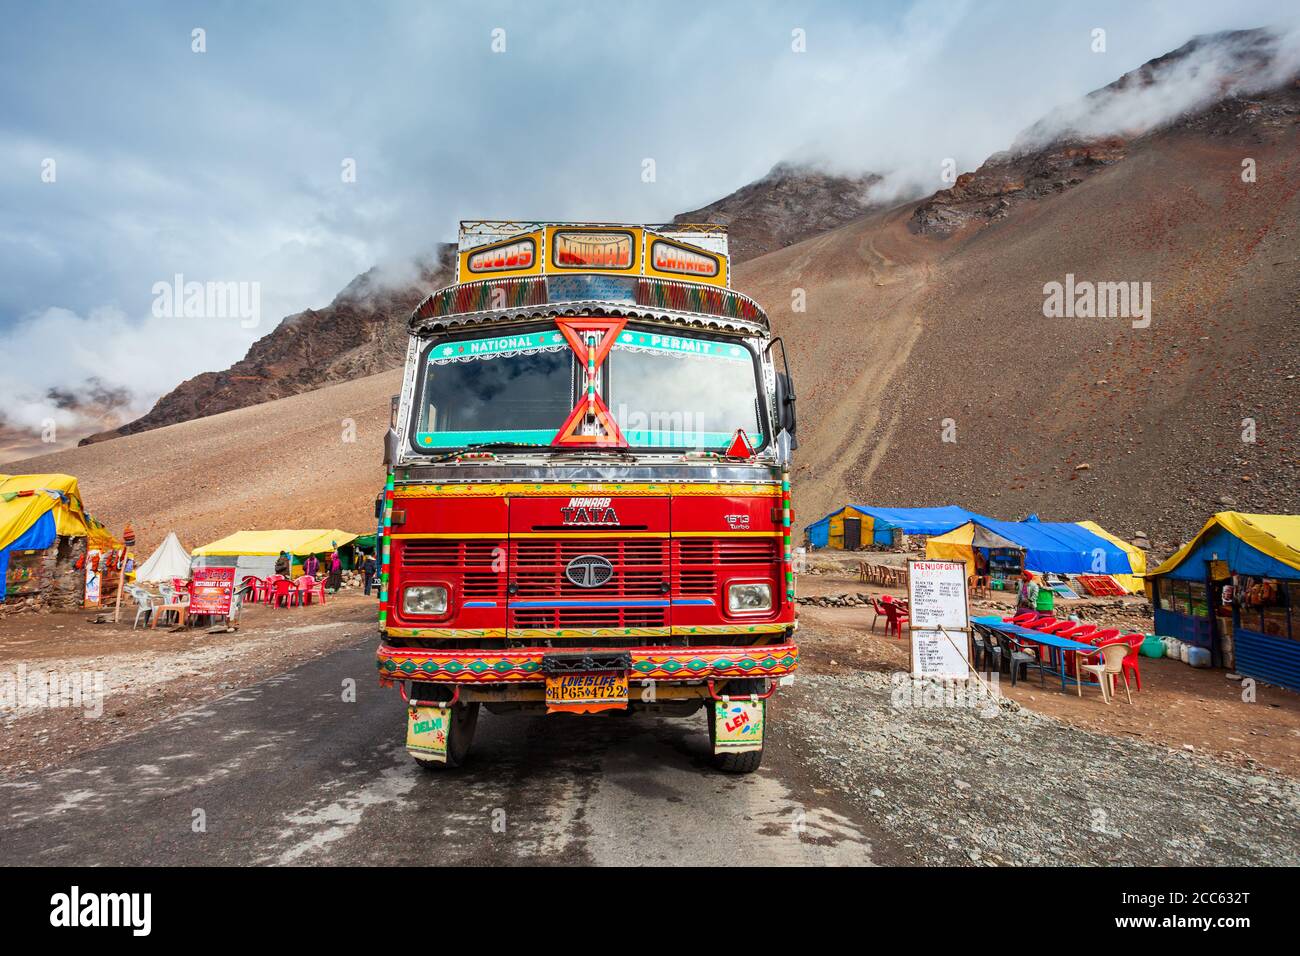 Camion TATA coloré sur la route entre Manali et Leh à Lladakh dans l'Himalaya, dans le nord de l'Inde Banque D'Images